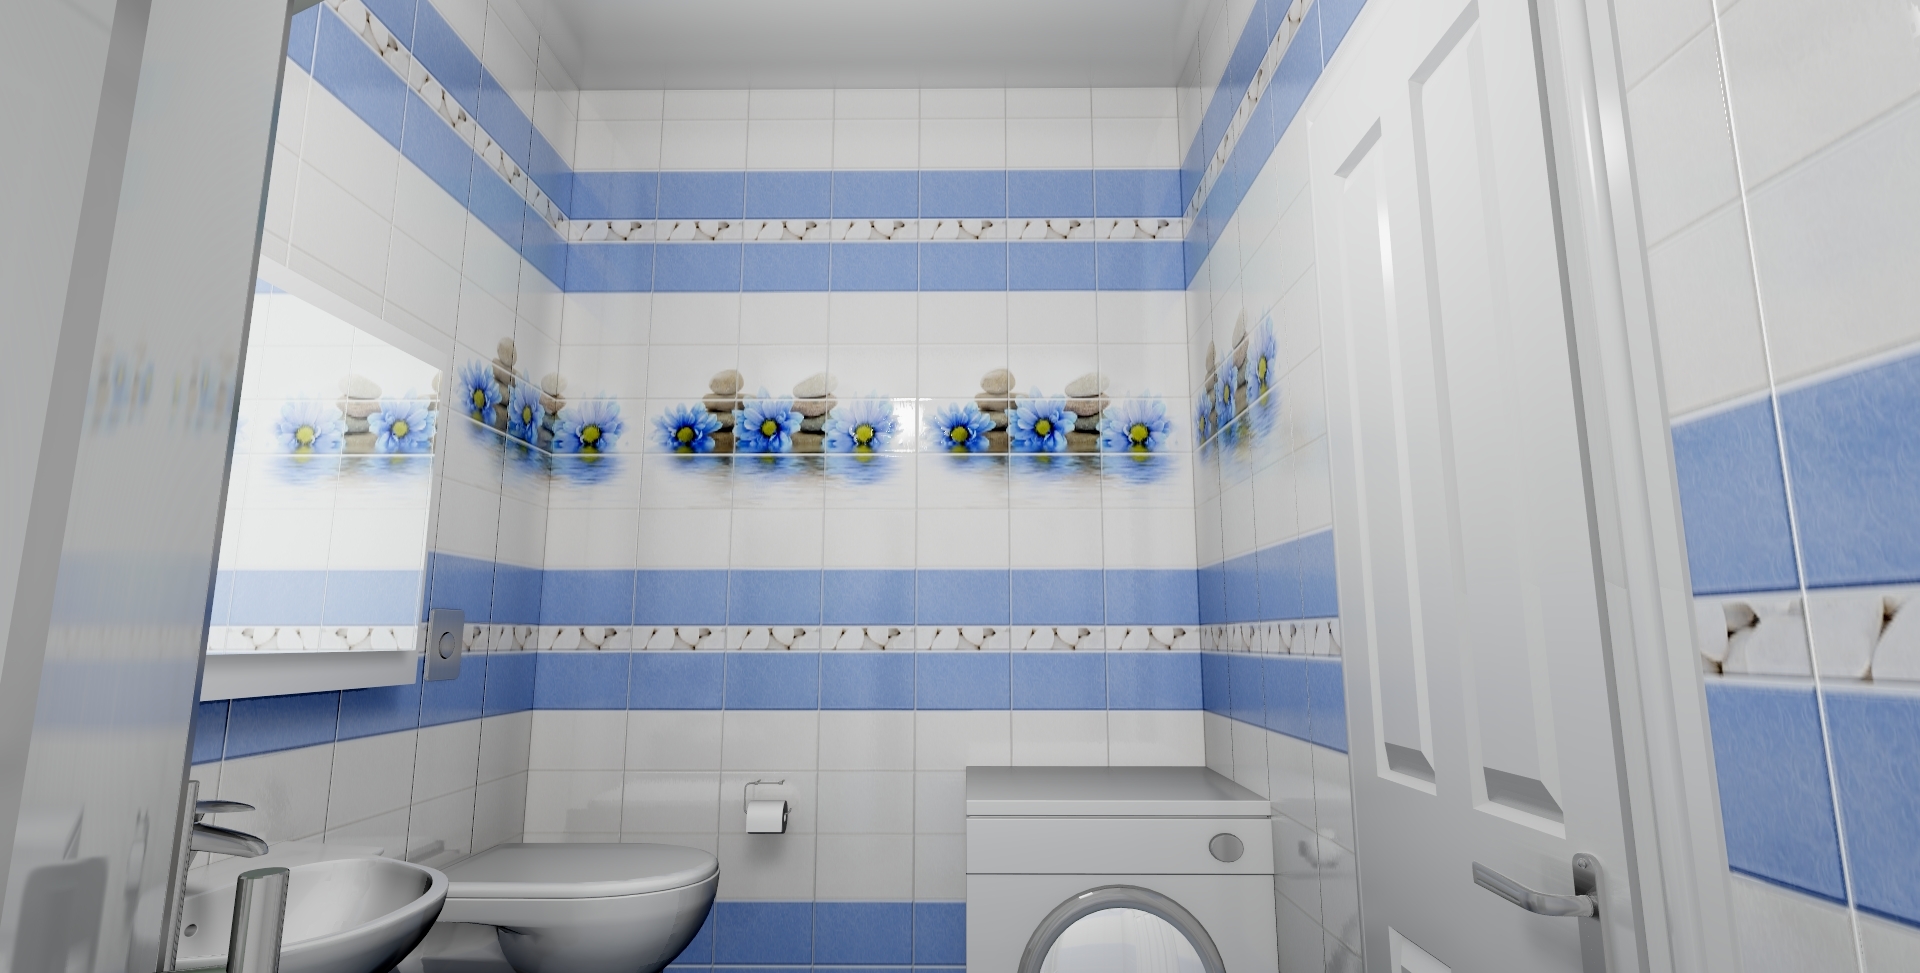 Как выбрать панели для ванной комнаты Выбор дизайна пластиковых панелей Какие инструменты понадобятся для работы Особенности монтажа ПВХ-панелей Преимущества и недостатки панелей из ПВХ